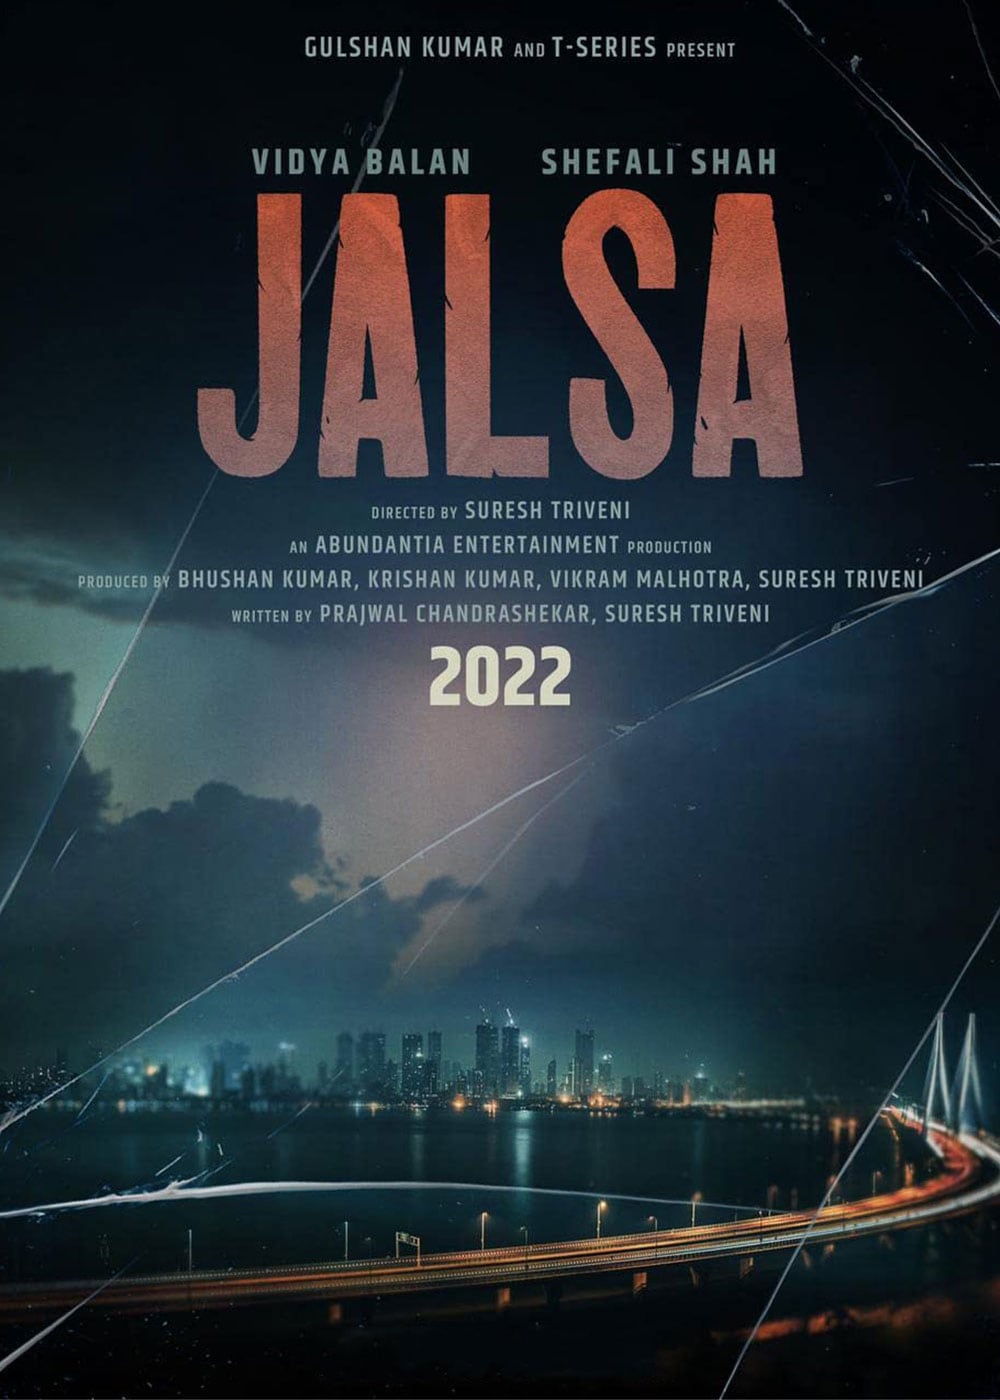 jalsa movie review imdb